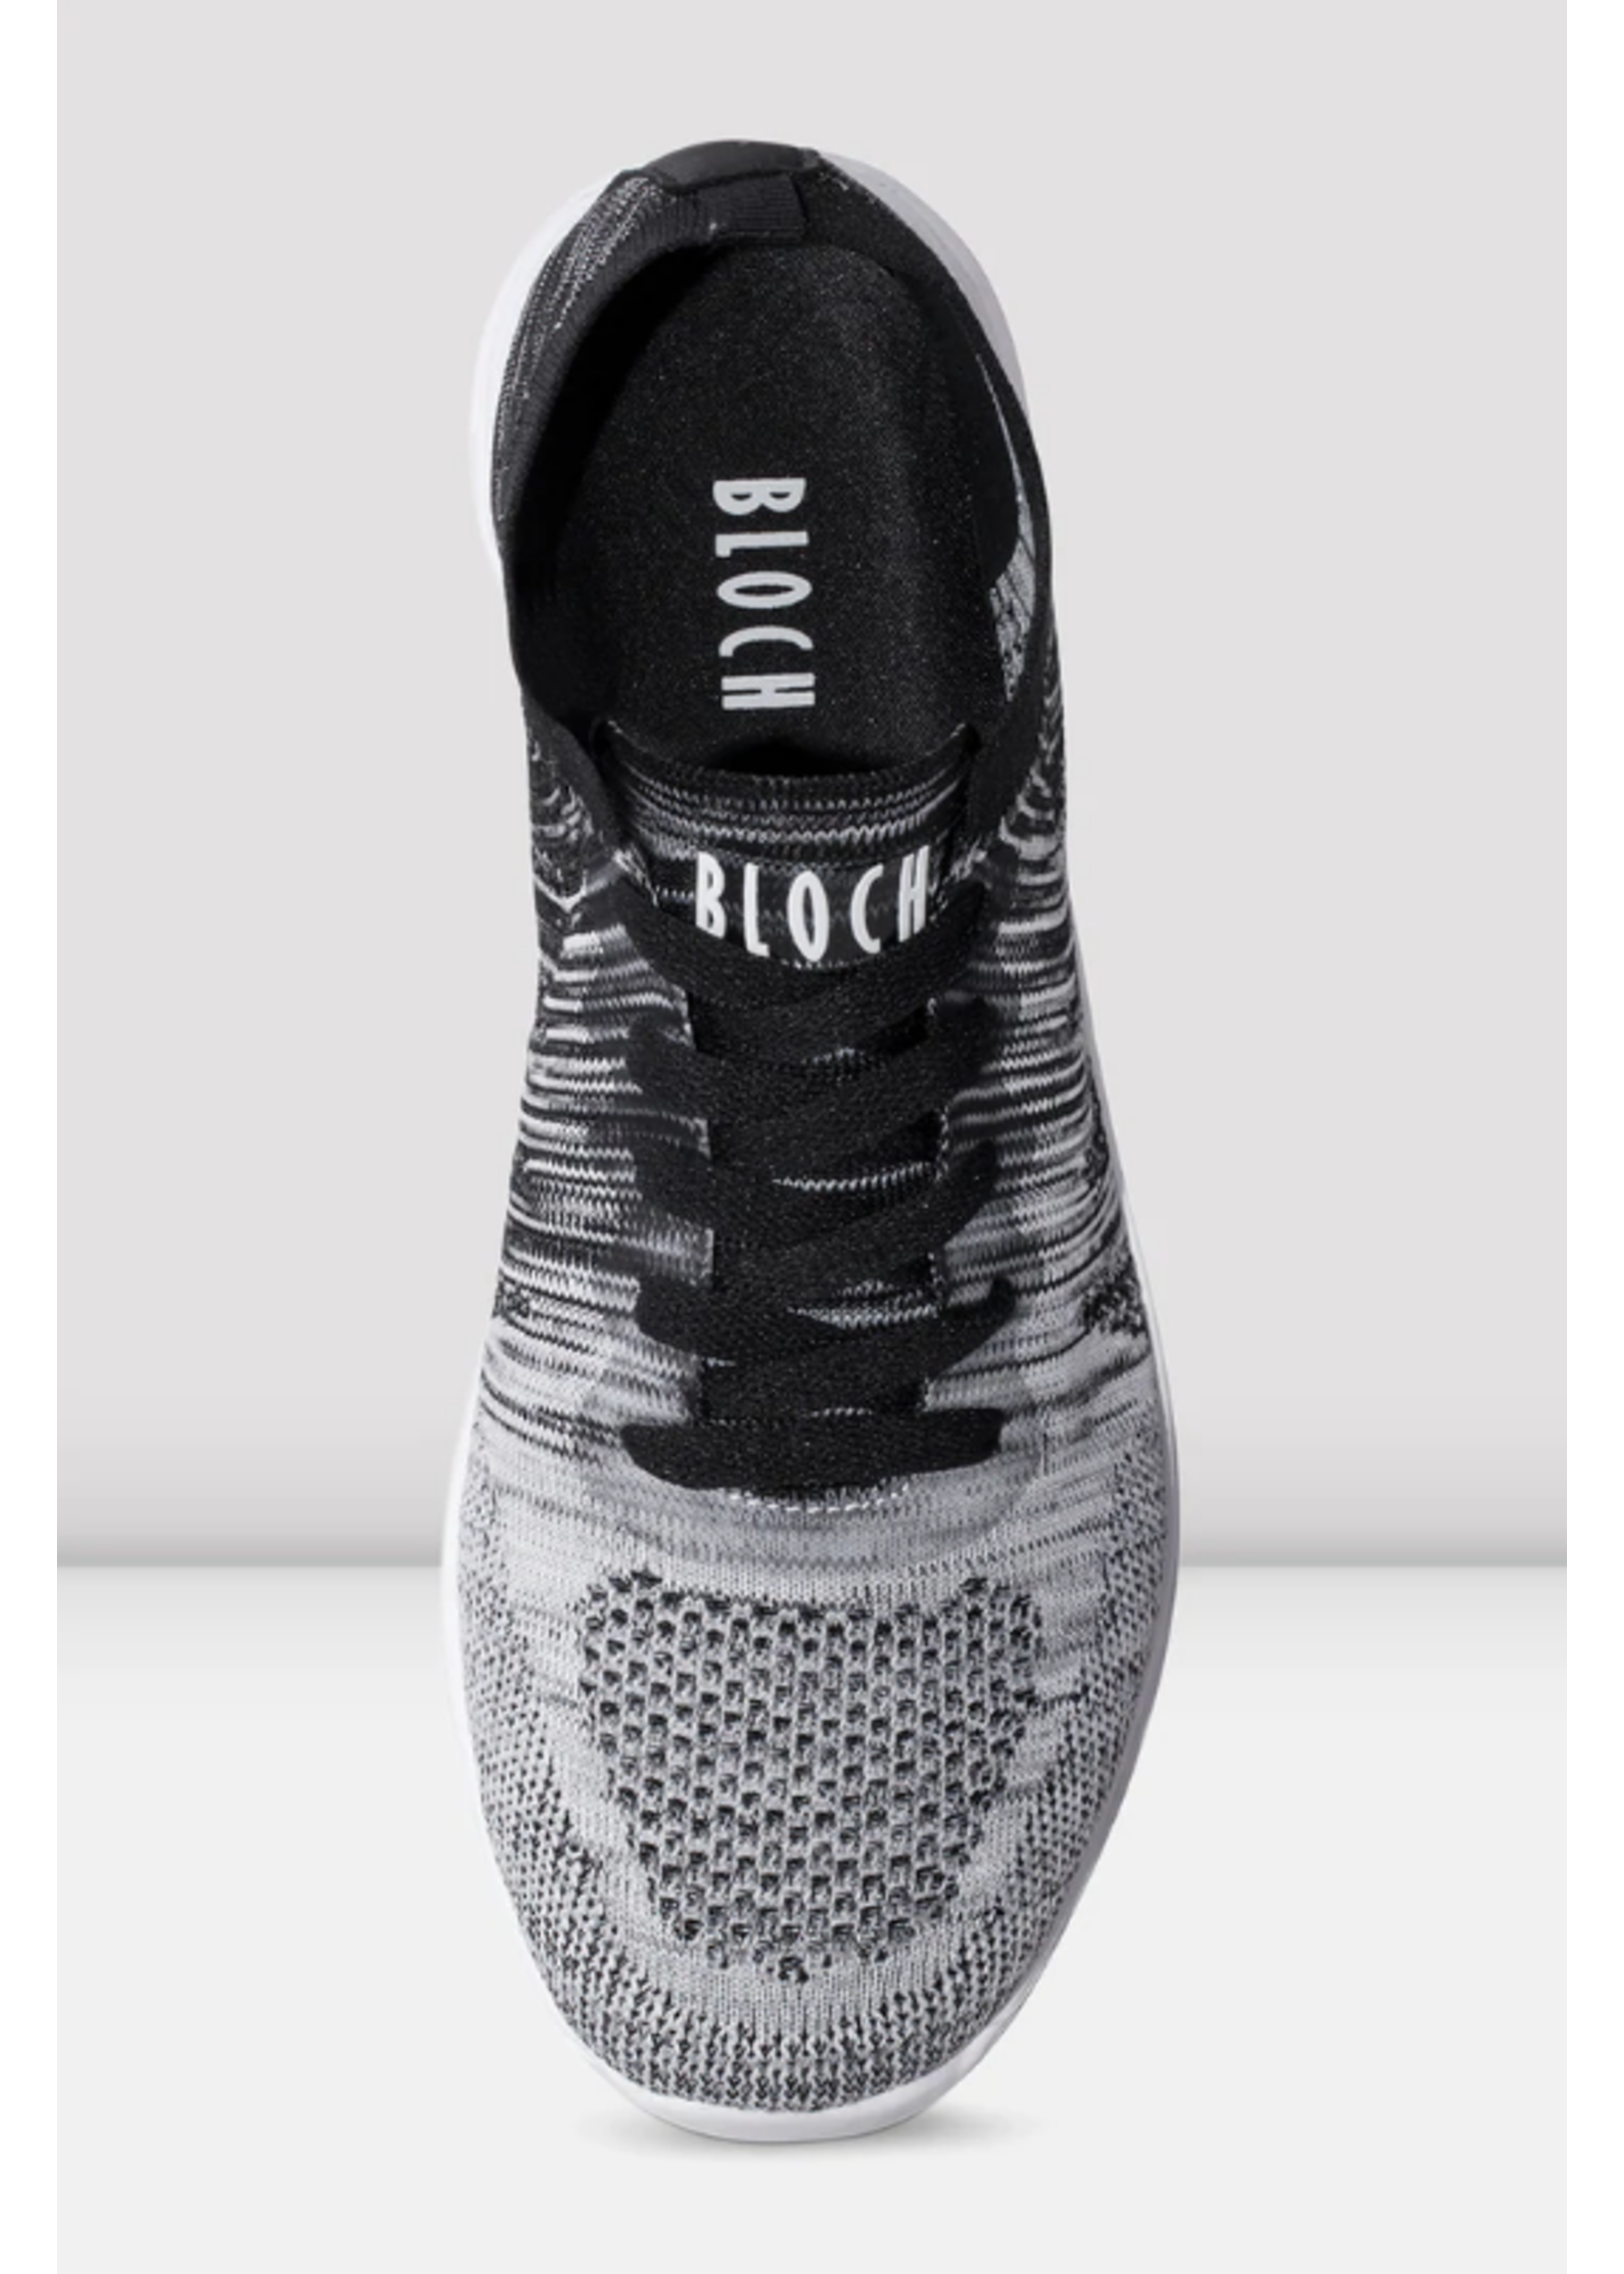 Bloch Bloch Omnia Sneaker Shoe Size 8